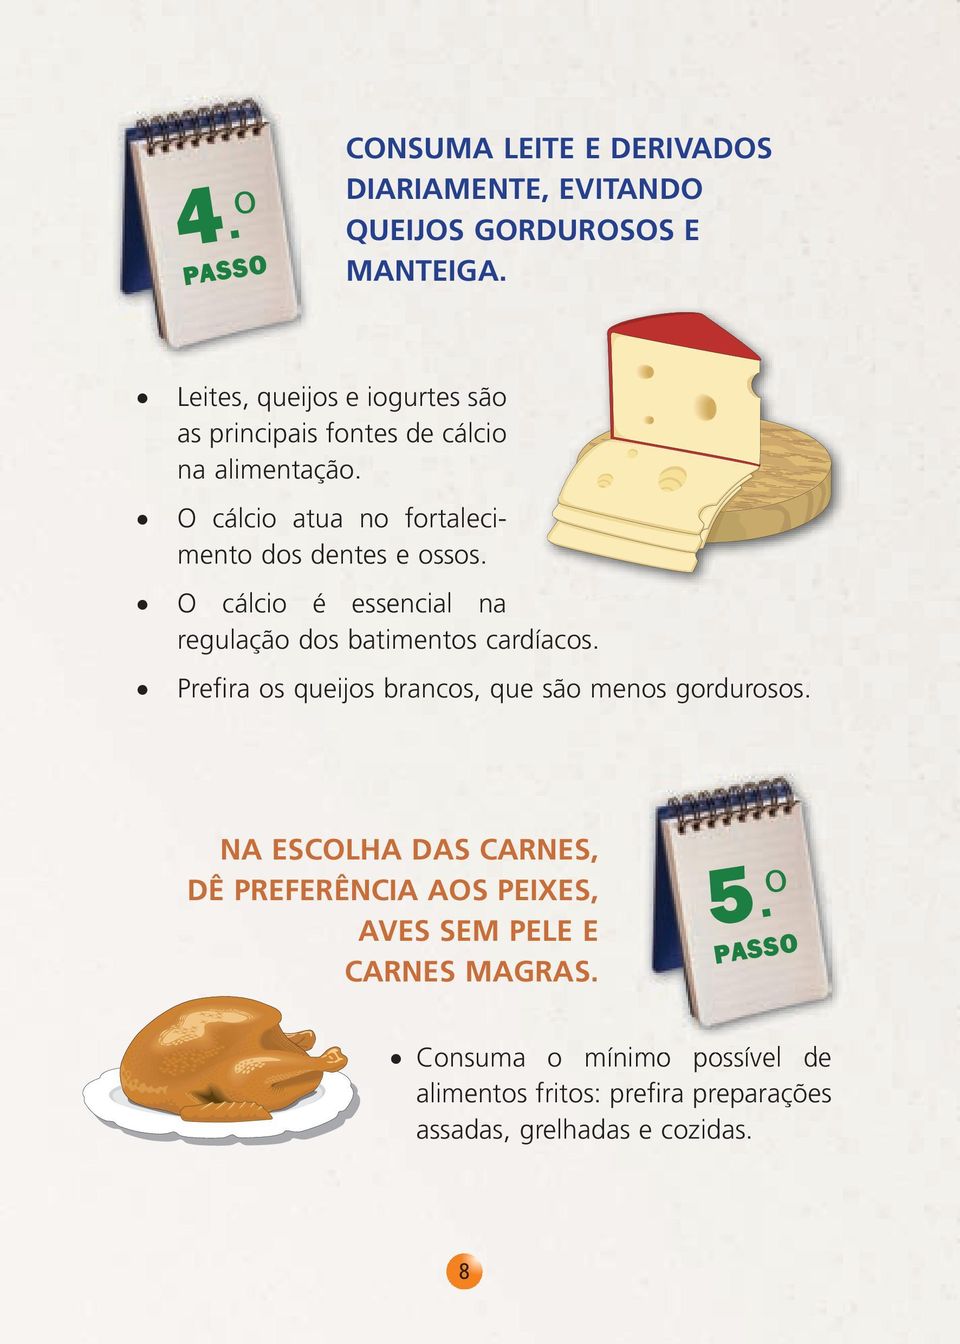 O cálcio é essencial na regulação dos batimentos cardíacos. Prefira os queijos brancos, que são menos gordurosos.